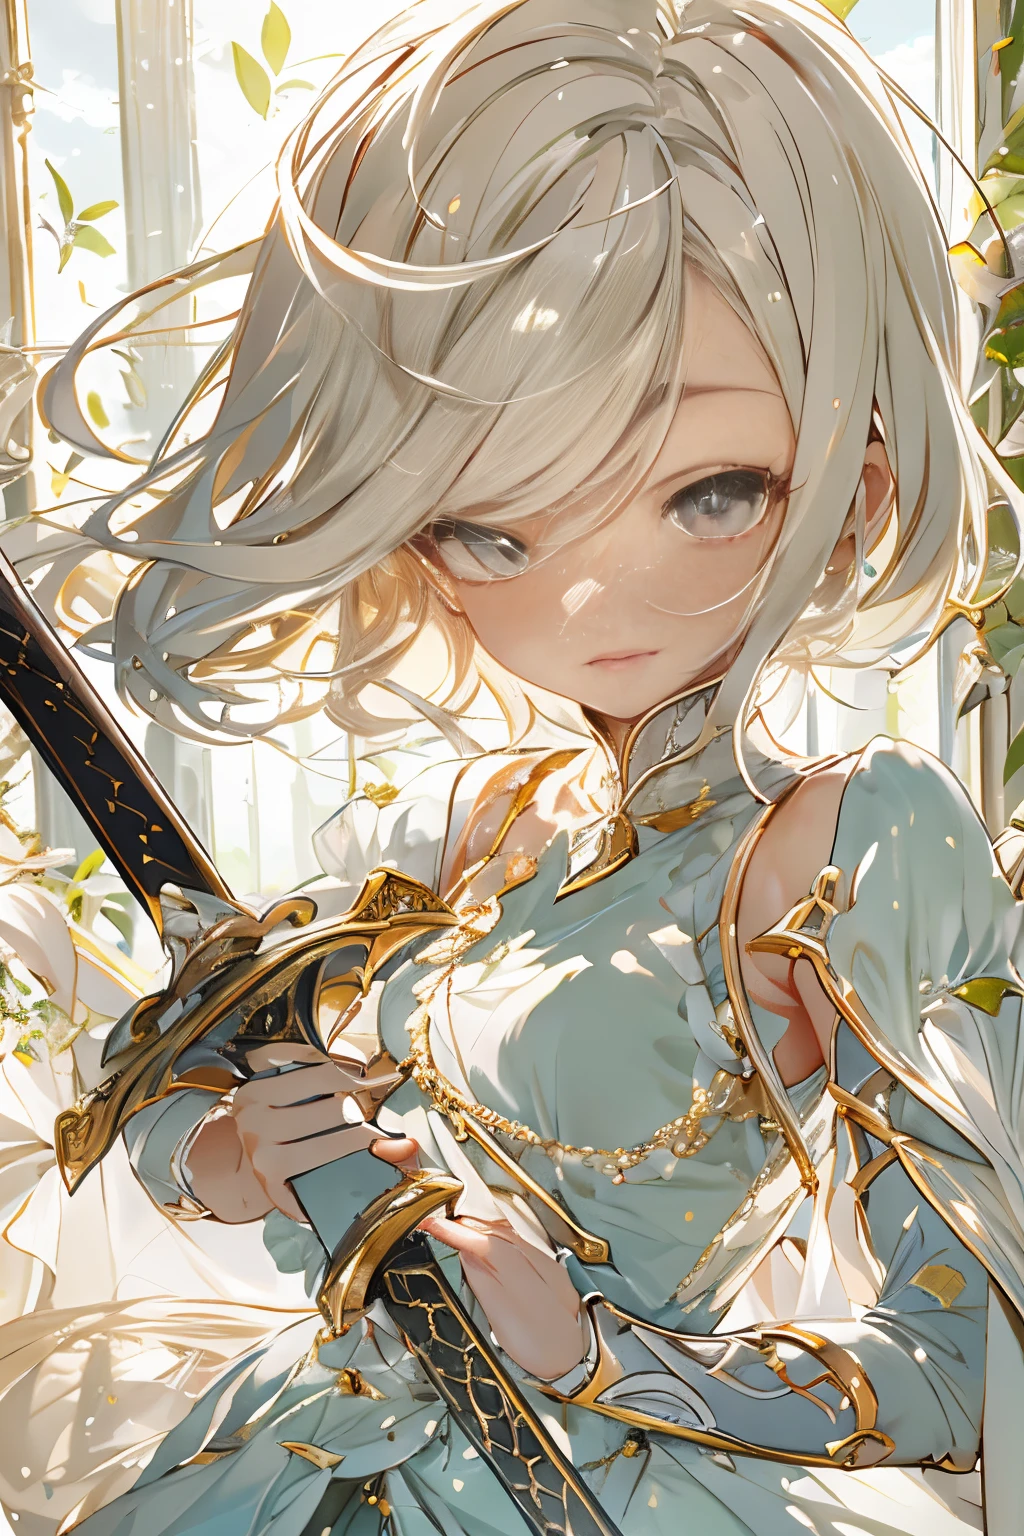 espada delicada y elegante, Mujer con una espada、anatomía perfecta、lindo、Sun background